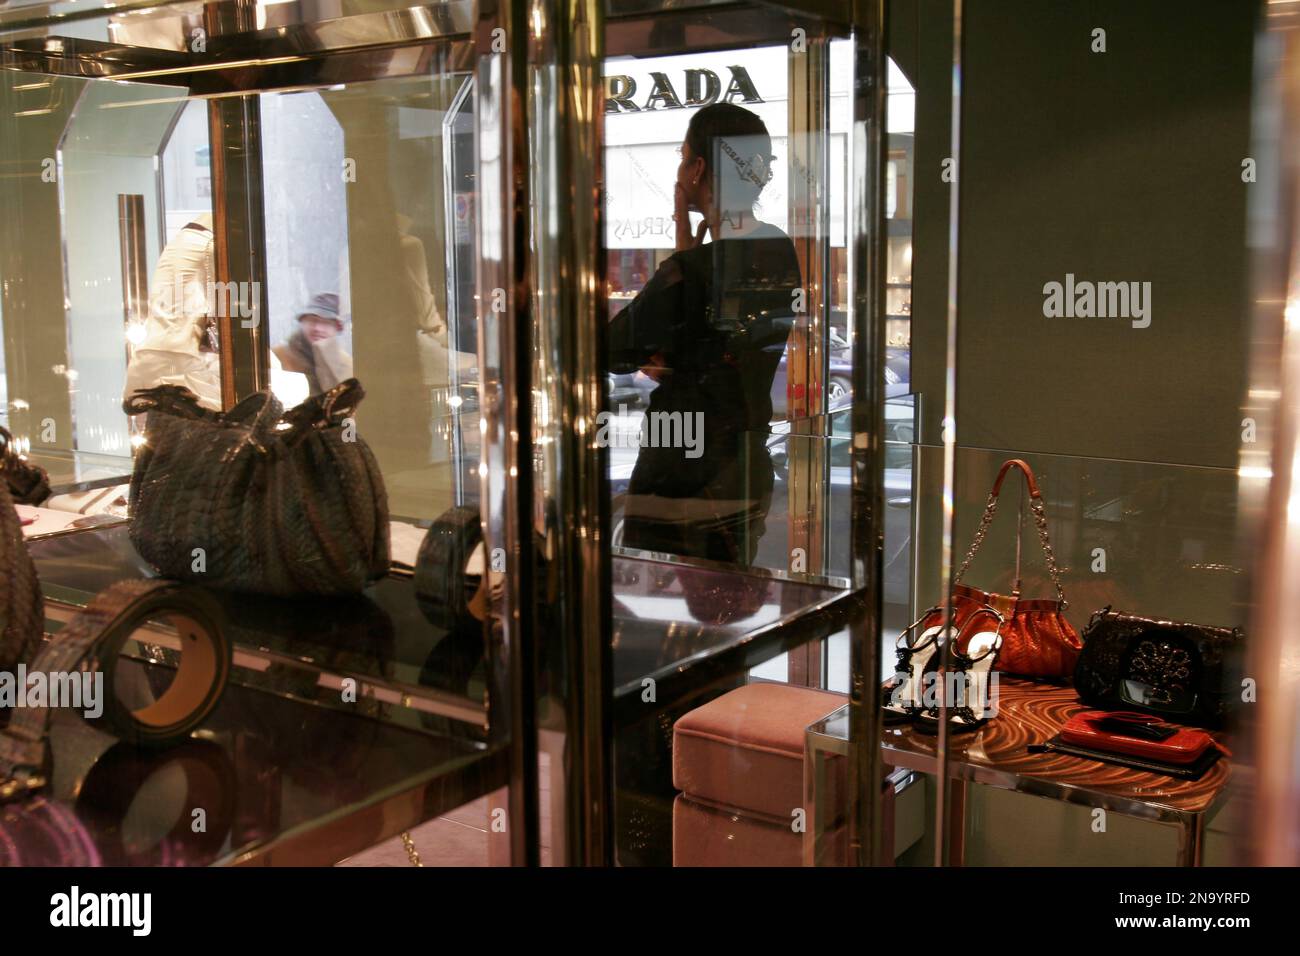 China, Hong Kong, Checkered Bags, full frame Stock Photo - Alamy